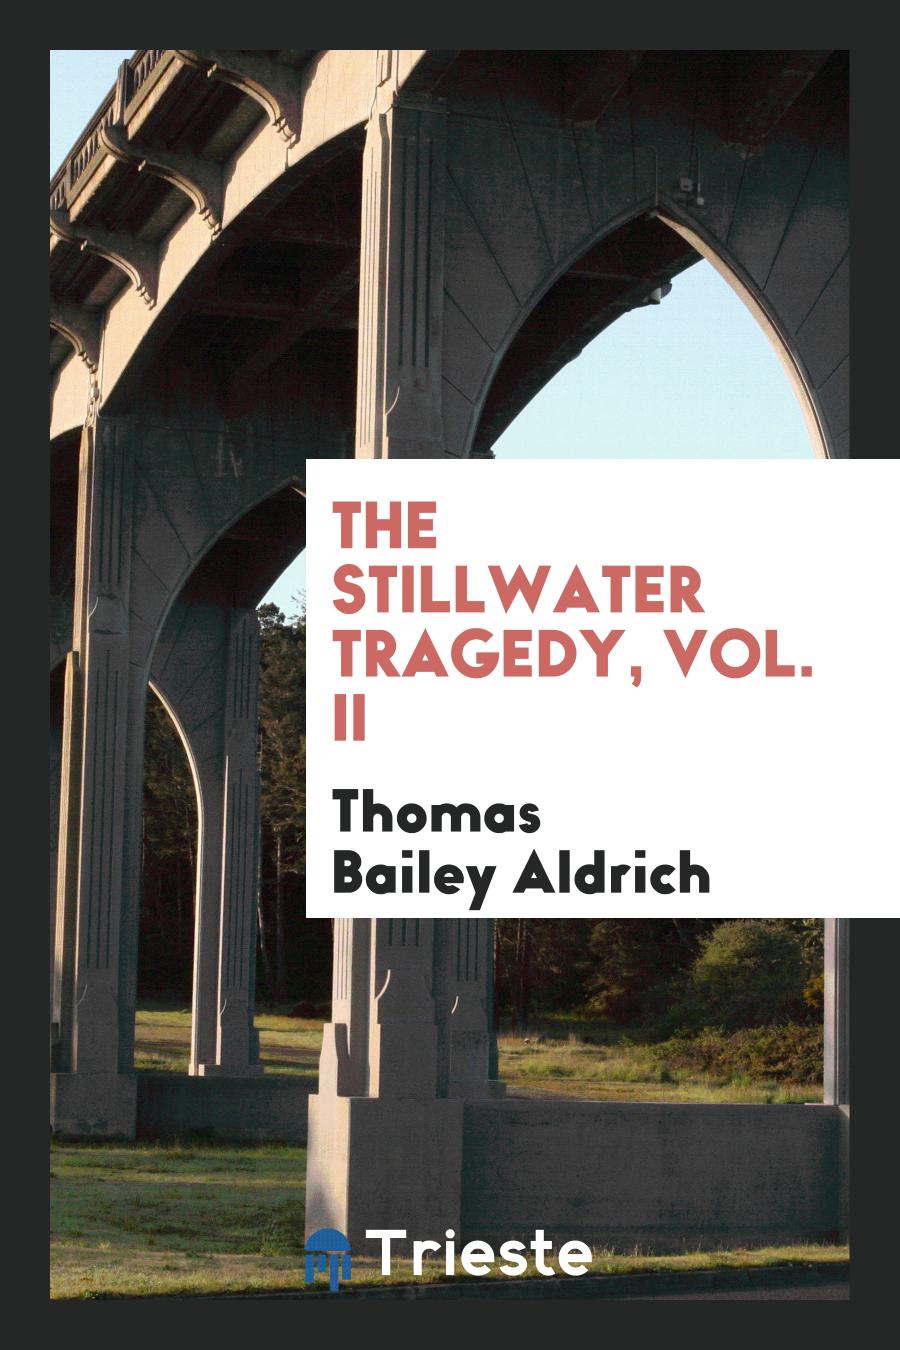 The Stillwater tragedy, Vol. II